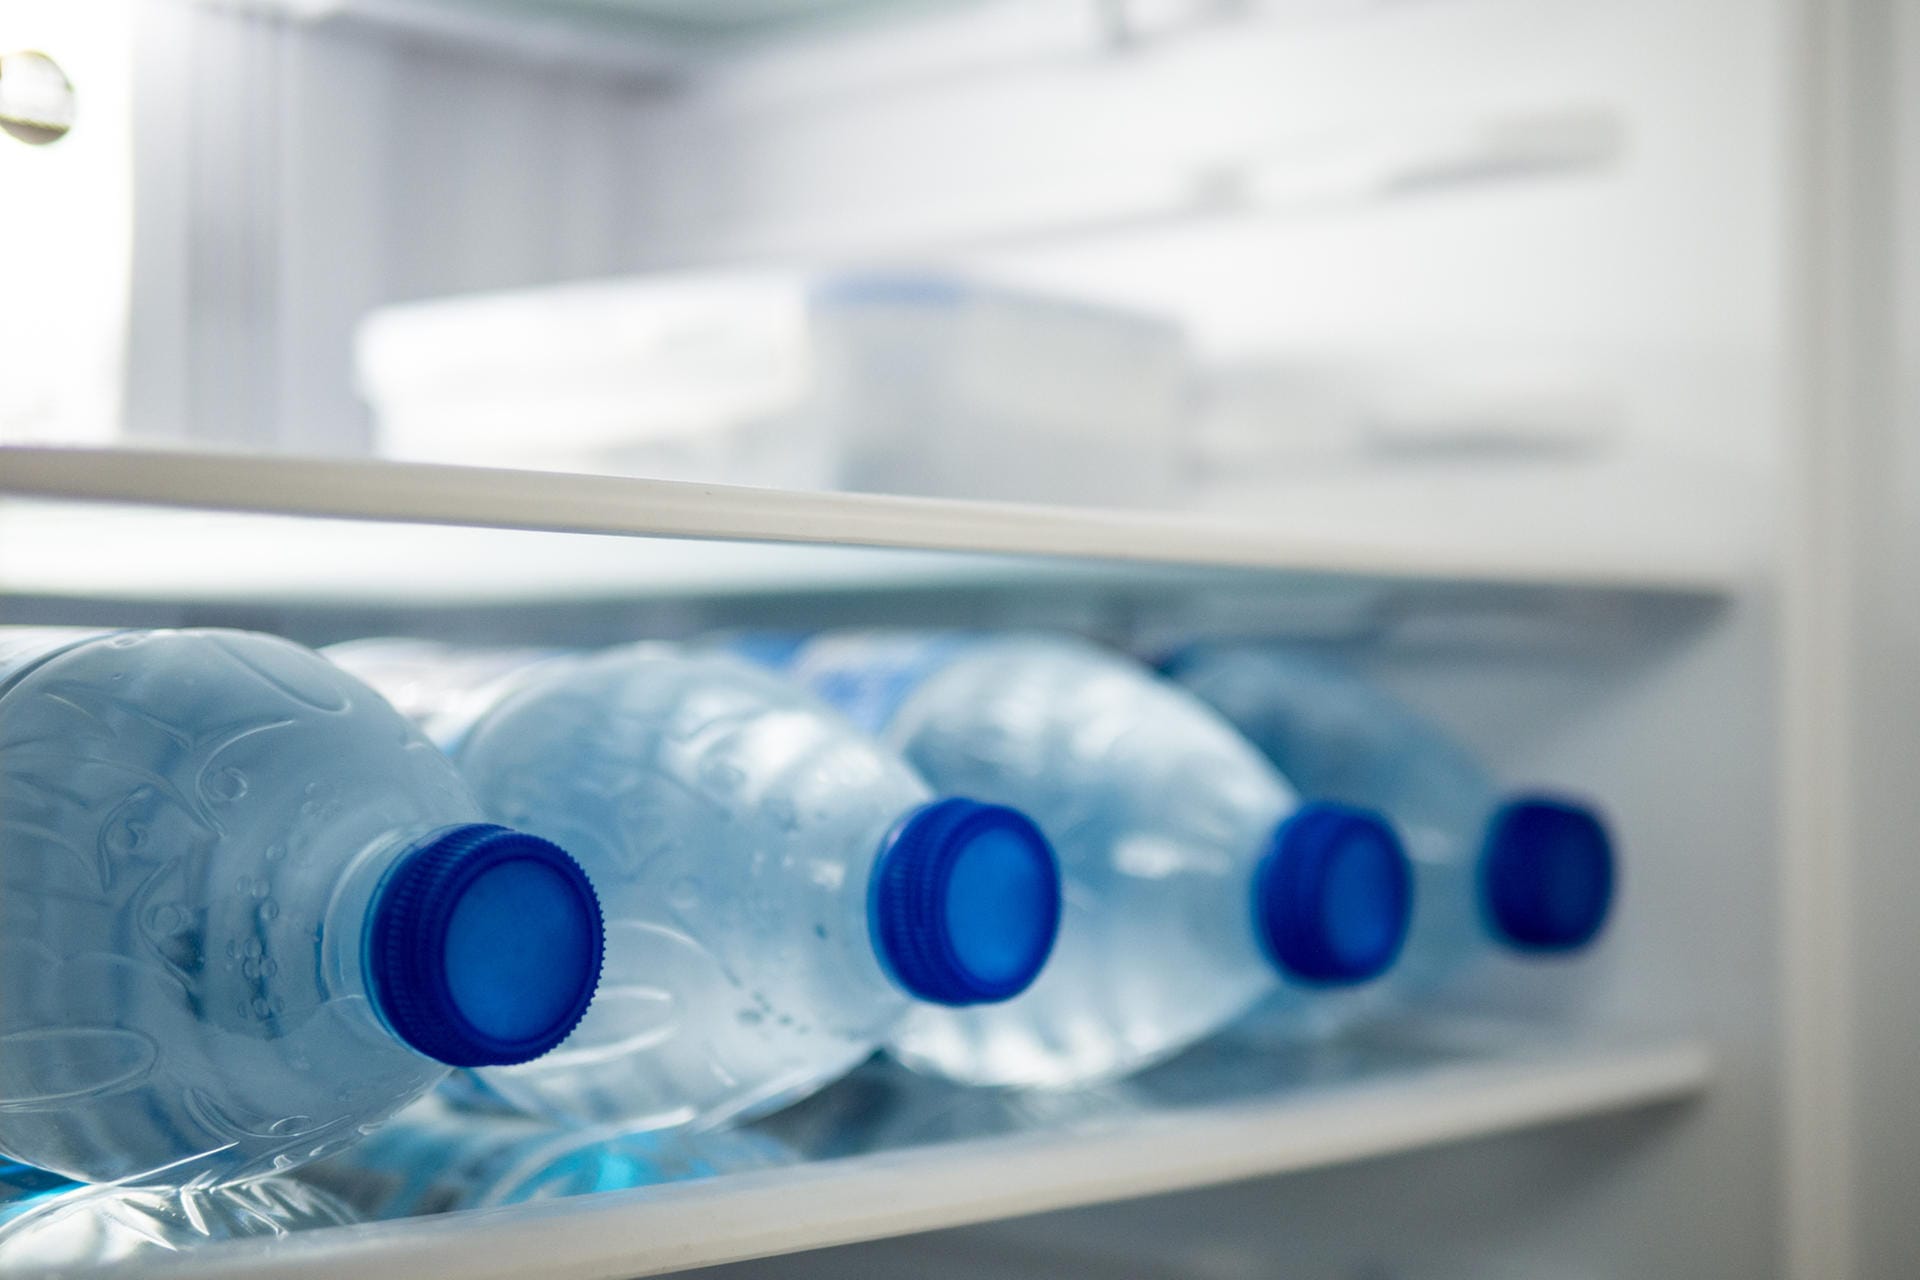 Legen Sie zwei bis vier Wasserflaschen – je nachdem, wie viel Platz Sie haben – in den Kühlschrank. Beim Öffnen des Gerätes sinkt die Innenraumtemperatur nicht so stark, da die Wasserflaschen in diesem Fall wie eine Art Kühlakku wirken.